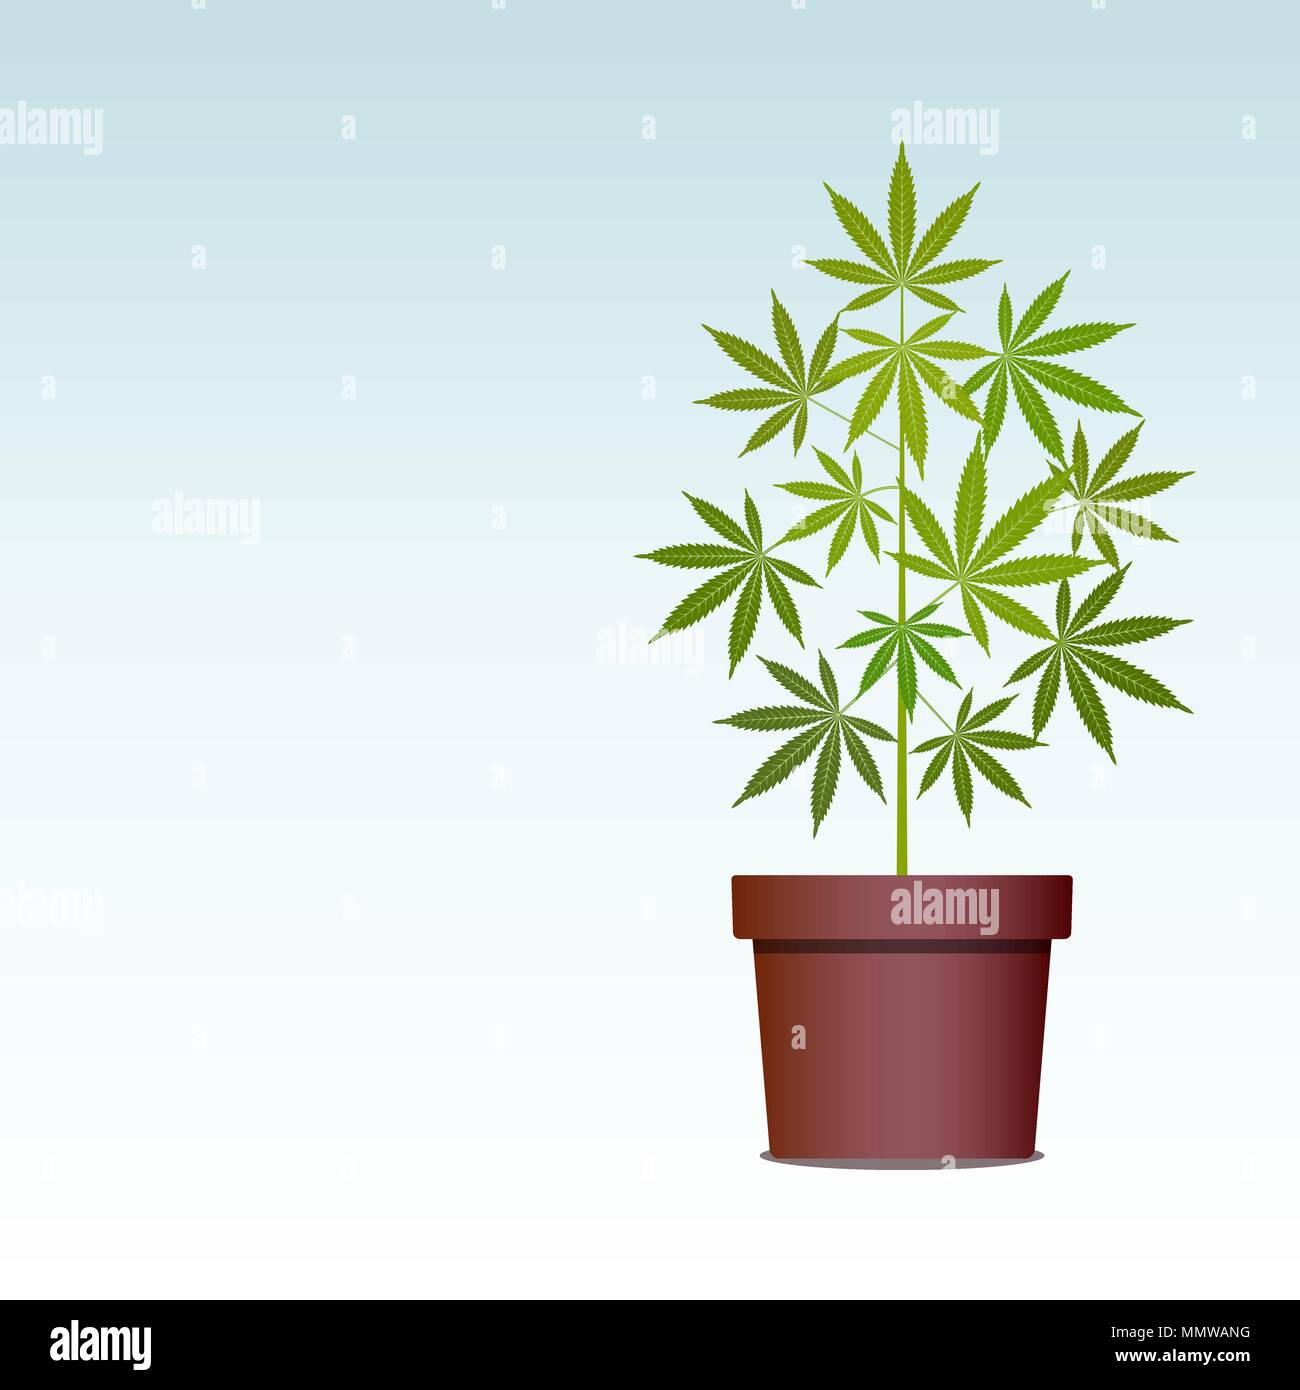 Marihuana oder Cannabis Pflanze im Topf. Grüne Kräuter in einen Topf. Den Anbau von Cannabis. Drogenkonsum, Marihuana verwenden. Isolierte Vector Illustration mit Kopie sp Stock Vektor